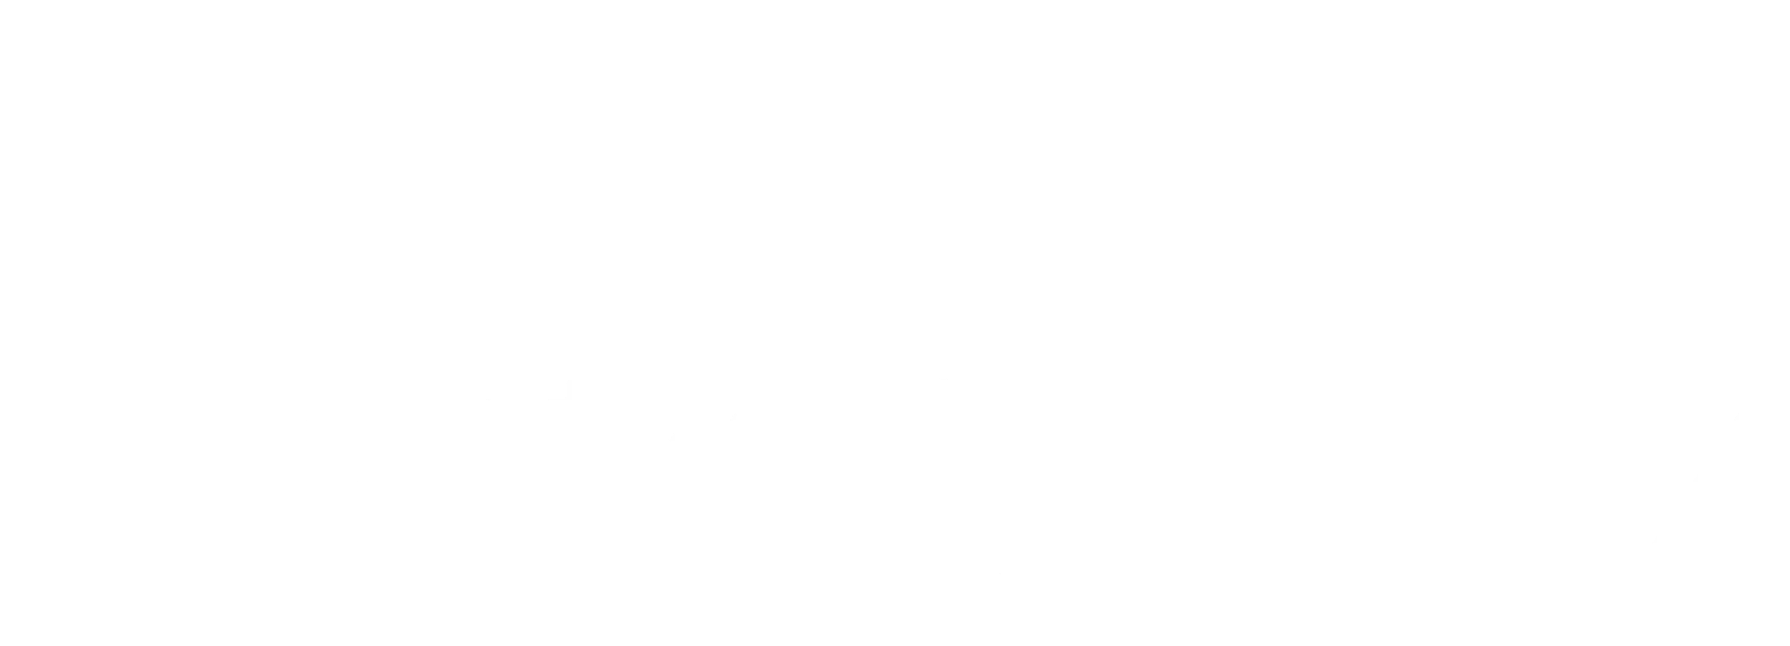 Erfolgsgeschichte Echolotzentrum Schlageter Logo